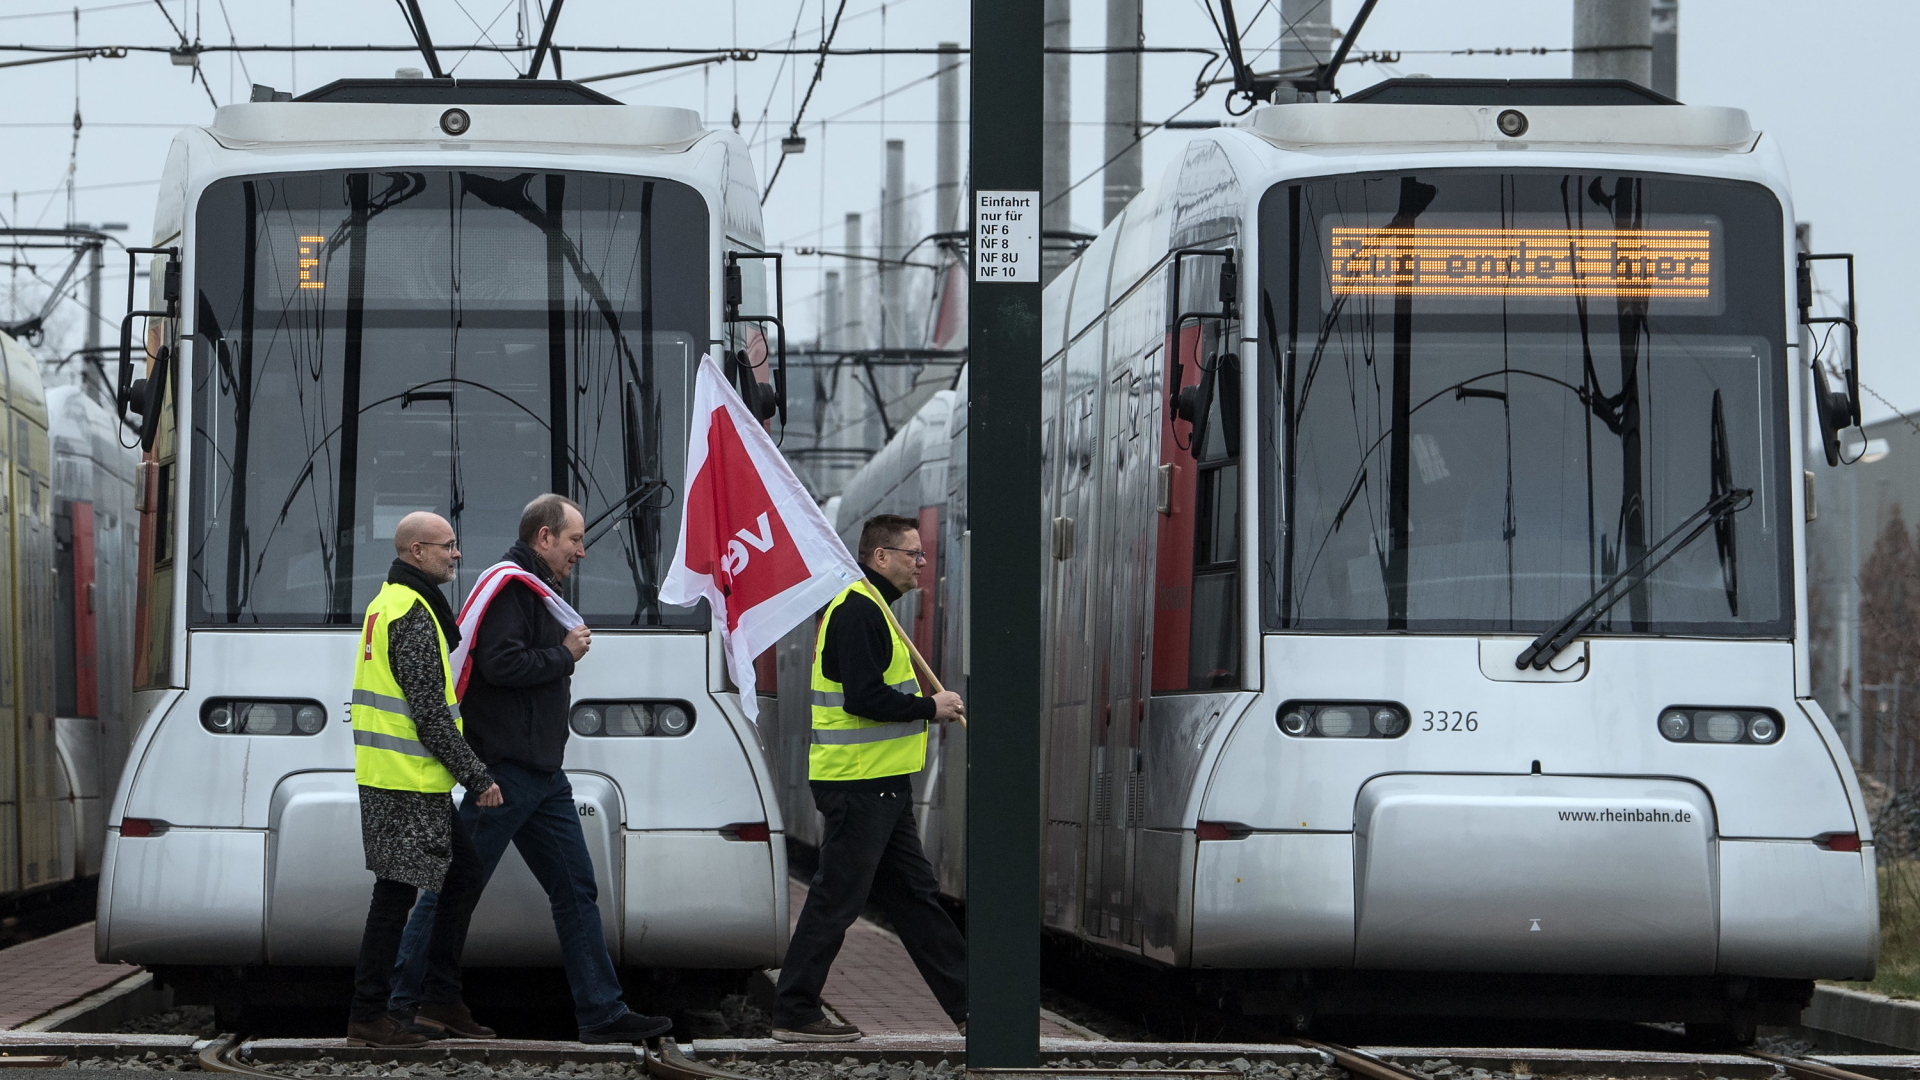 Mitarbeiter der Rheinbahn streiken in Düsseldorf | dpa